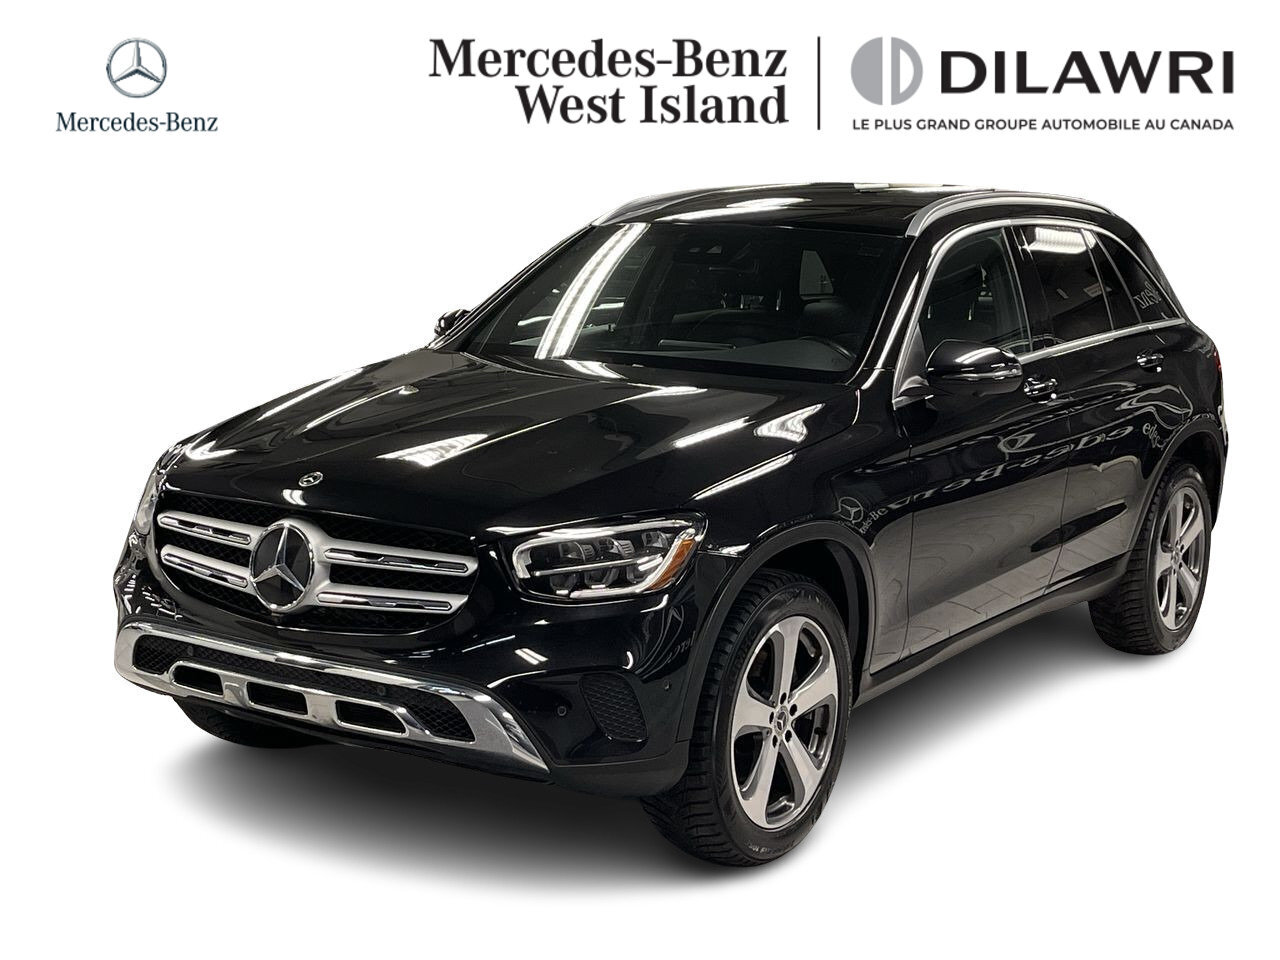 2022 Mercedes-Benz GLC300 4MATIC SUV * Certifié * Certified * Caplay Premium